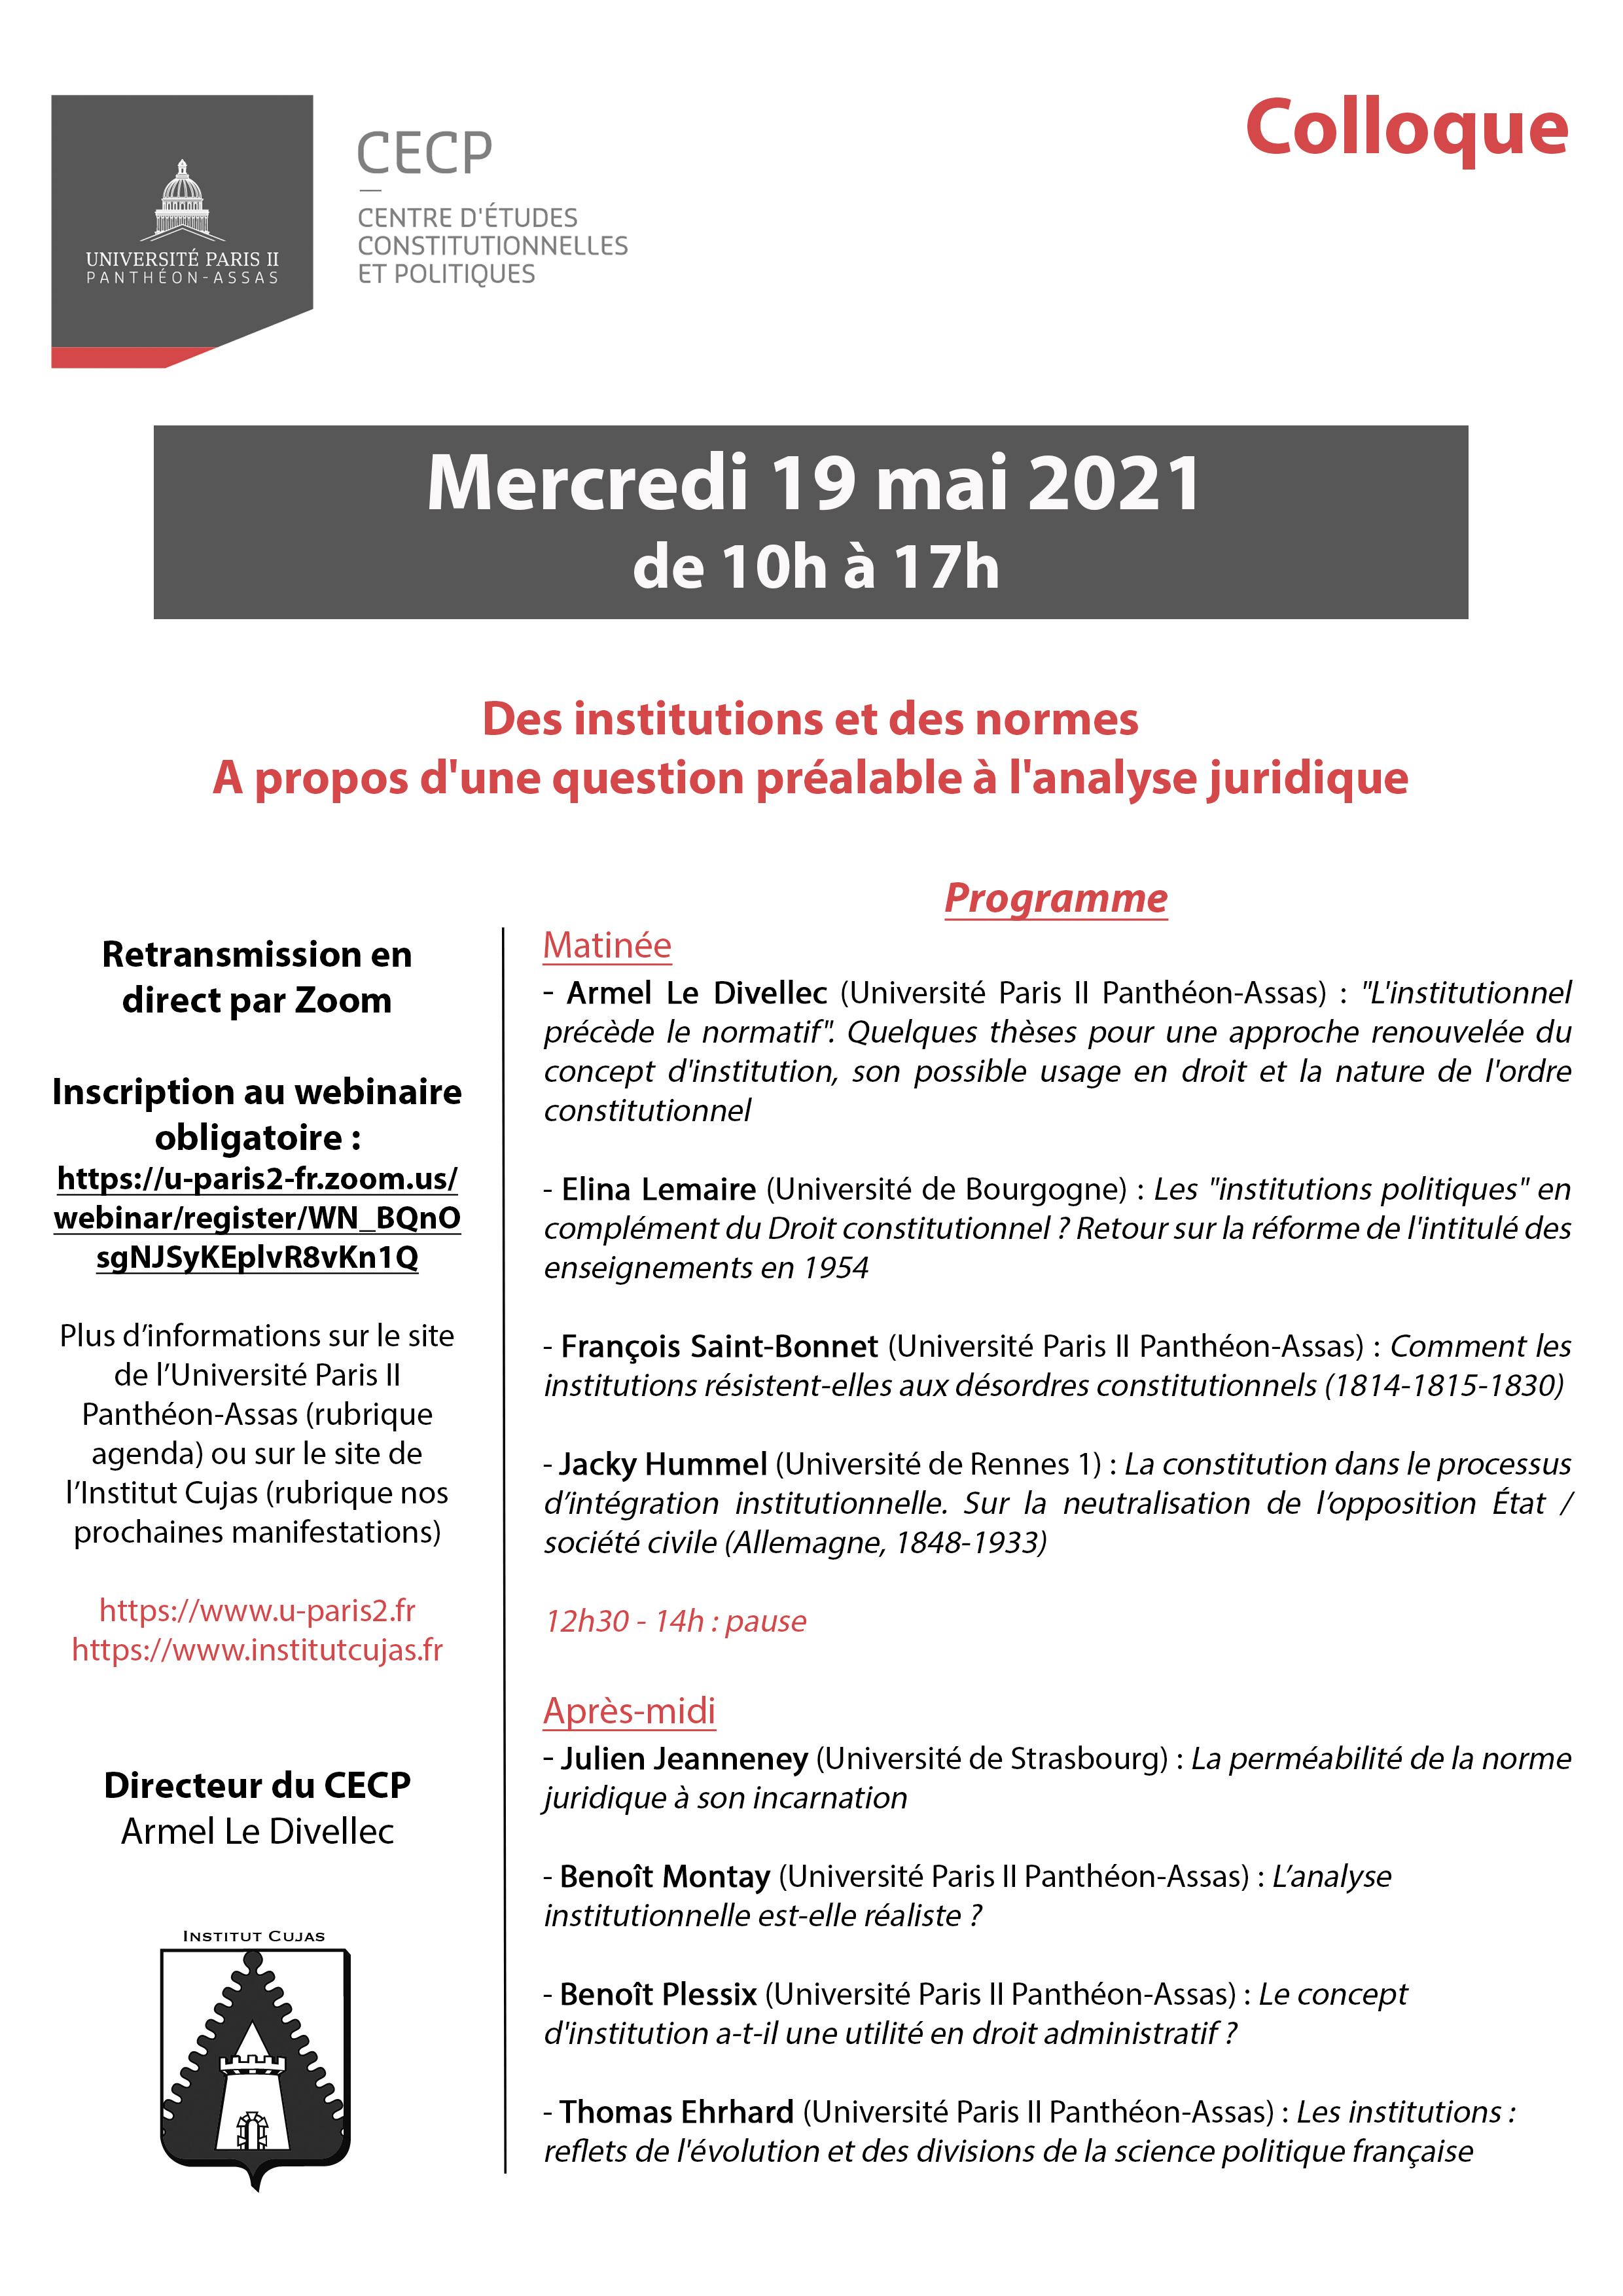 Programme Colloque CECP du 19 mai 2021